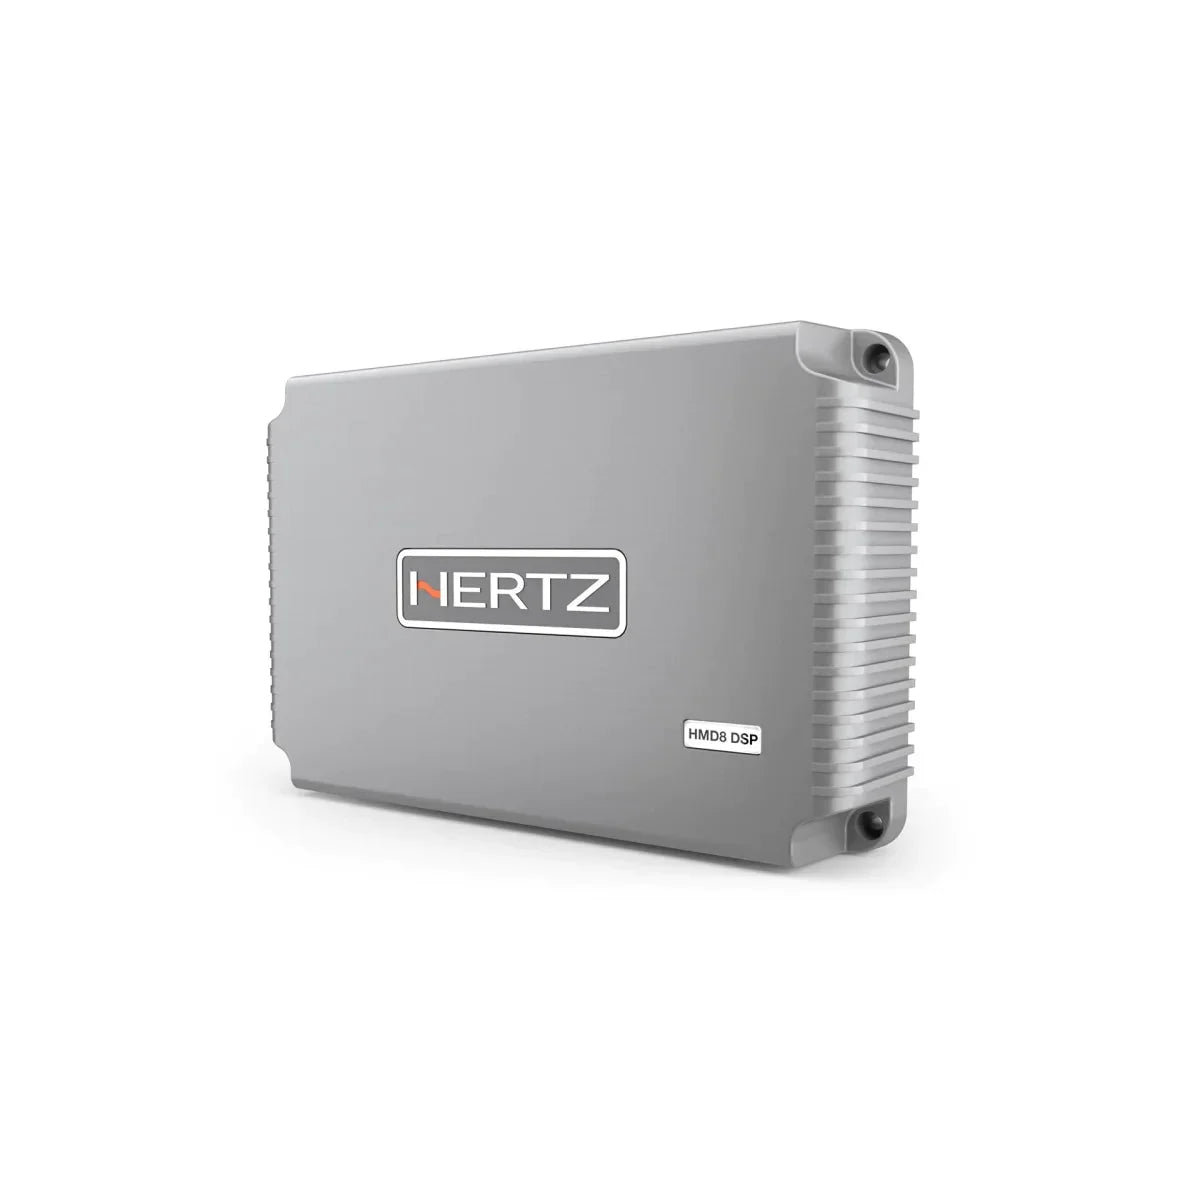 Hertz-HMD8 DSP 24V-8-Kanal Verstärker-Masori.de